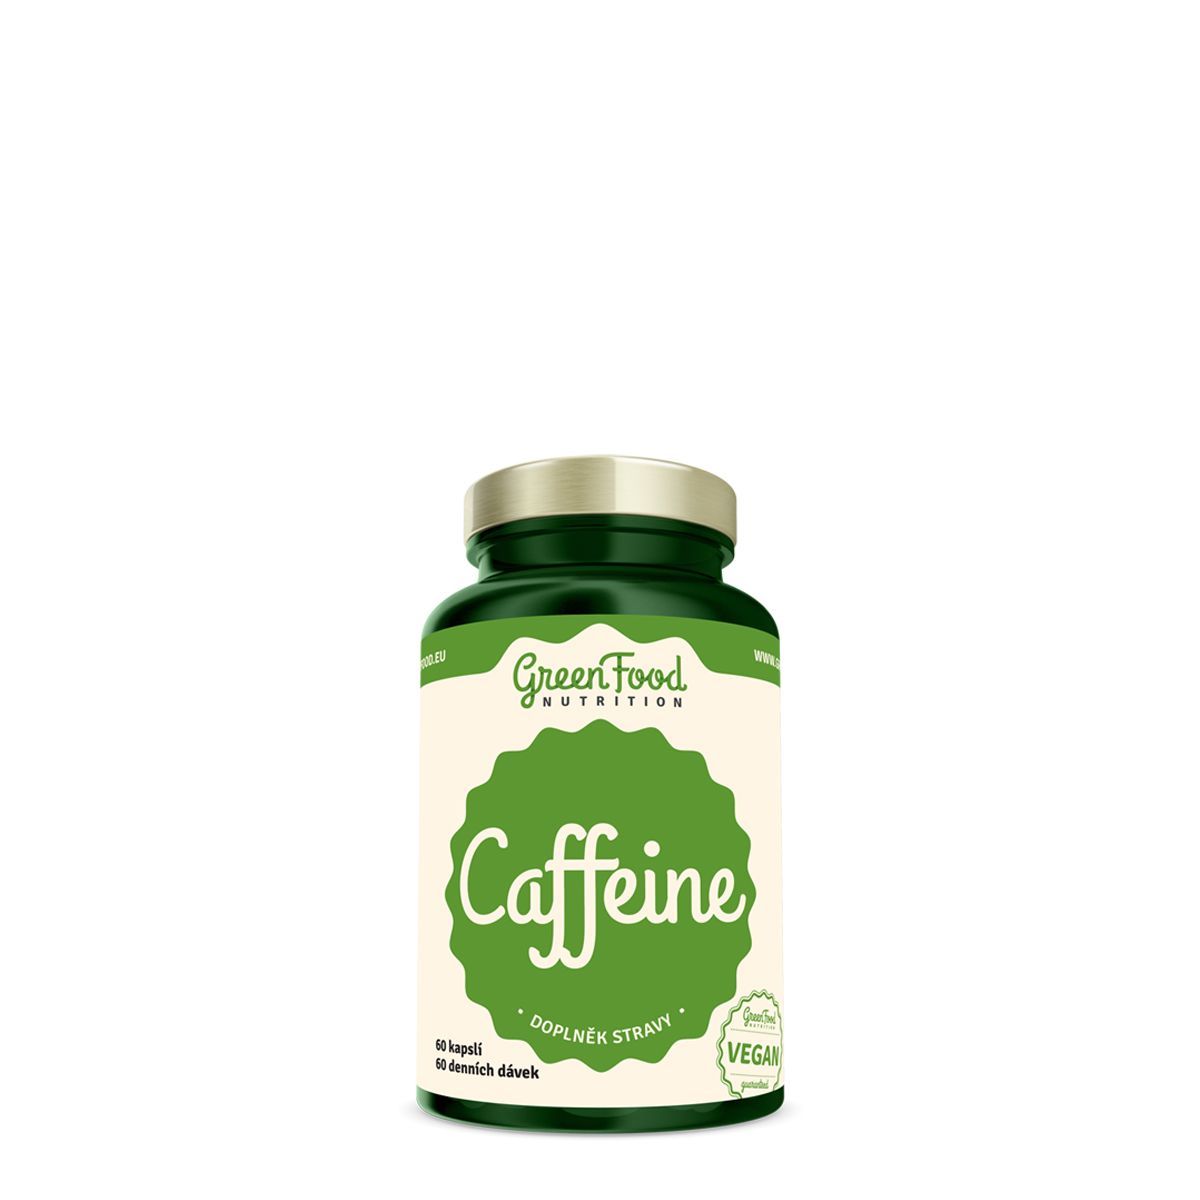 GREENFOOD NUTRITION - CAFFEINE 125 MG - TERMÉSZETES VÍZMENTES KOFFEINT TARTALMAZÓ ÉTRENDKIEGÉSZÍTŐ  - 60 KAPSZULA